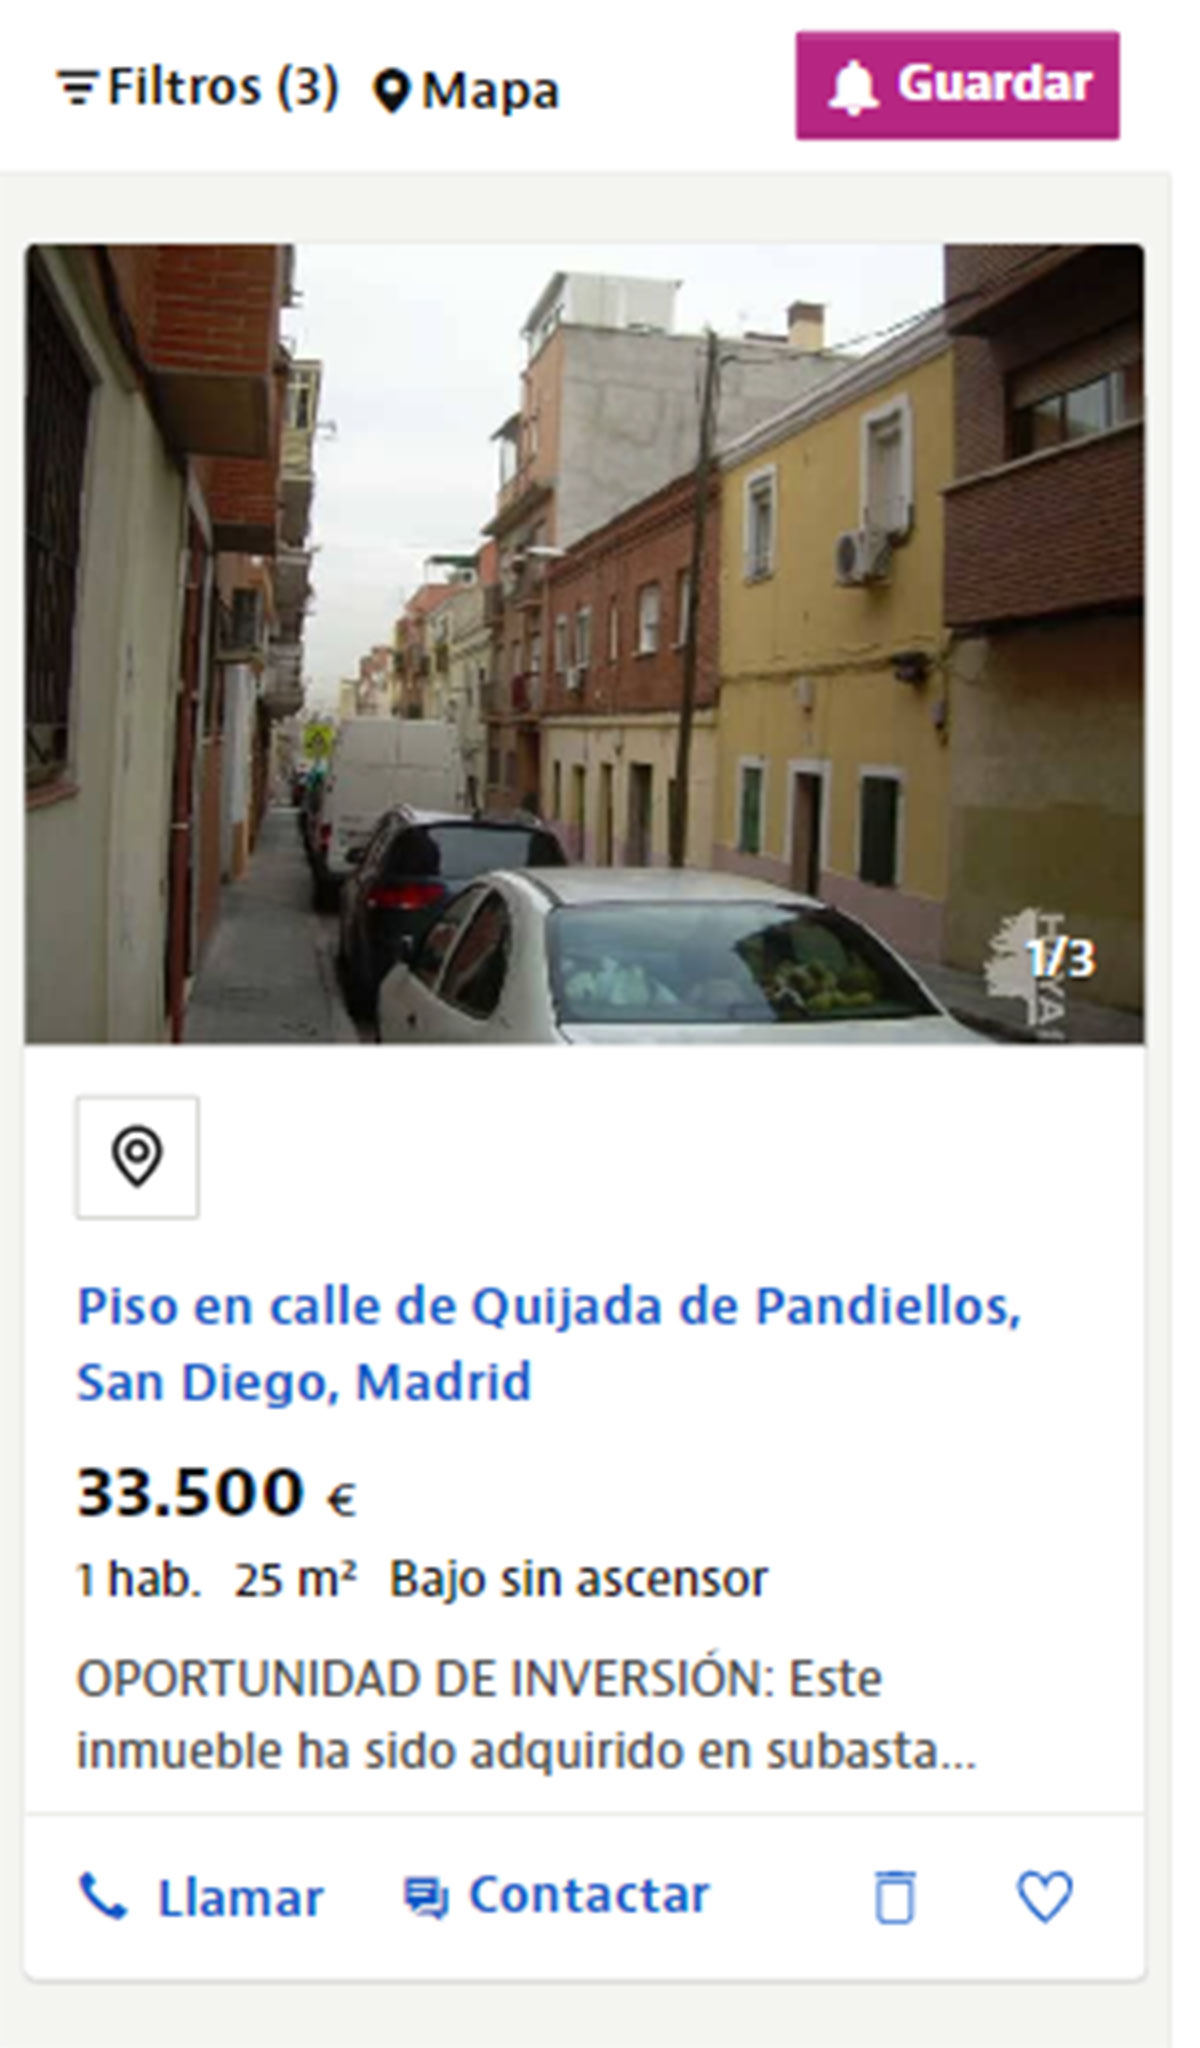 Piso cerca de Madrid por 33.500 euros